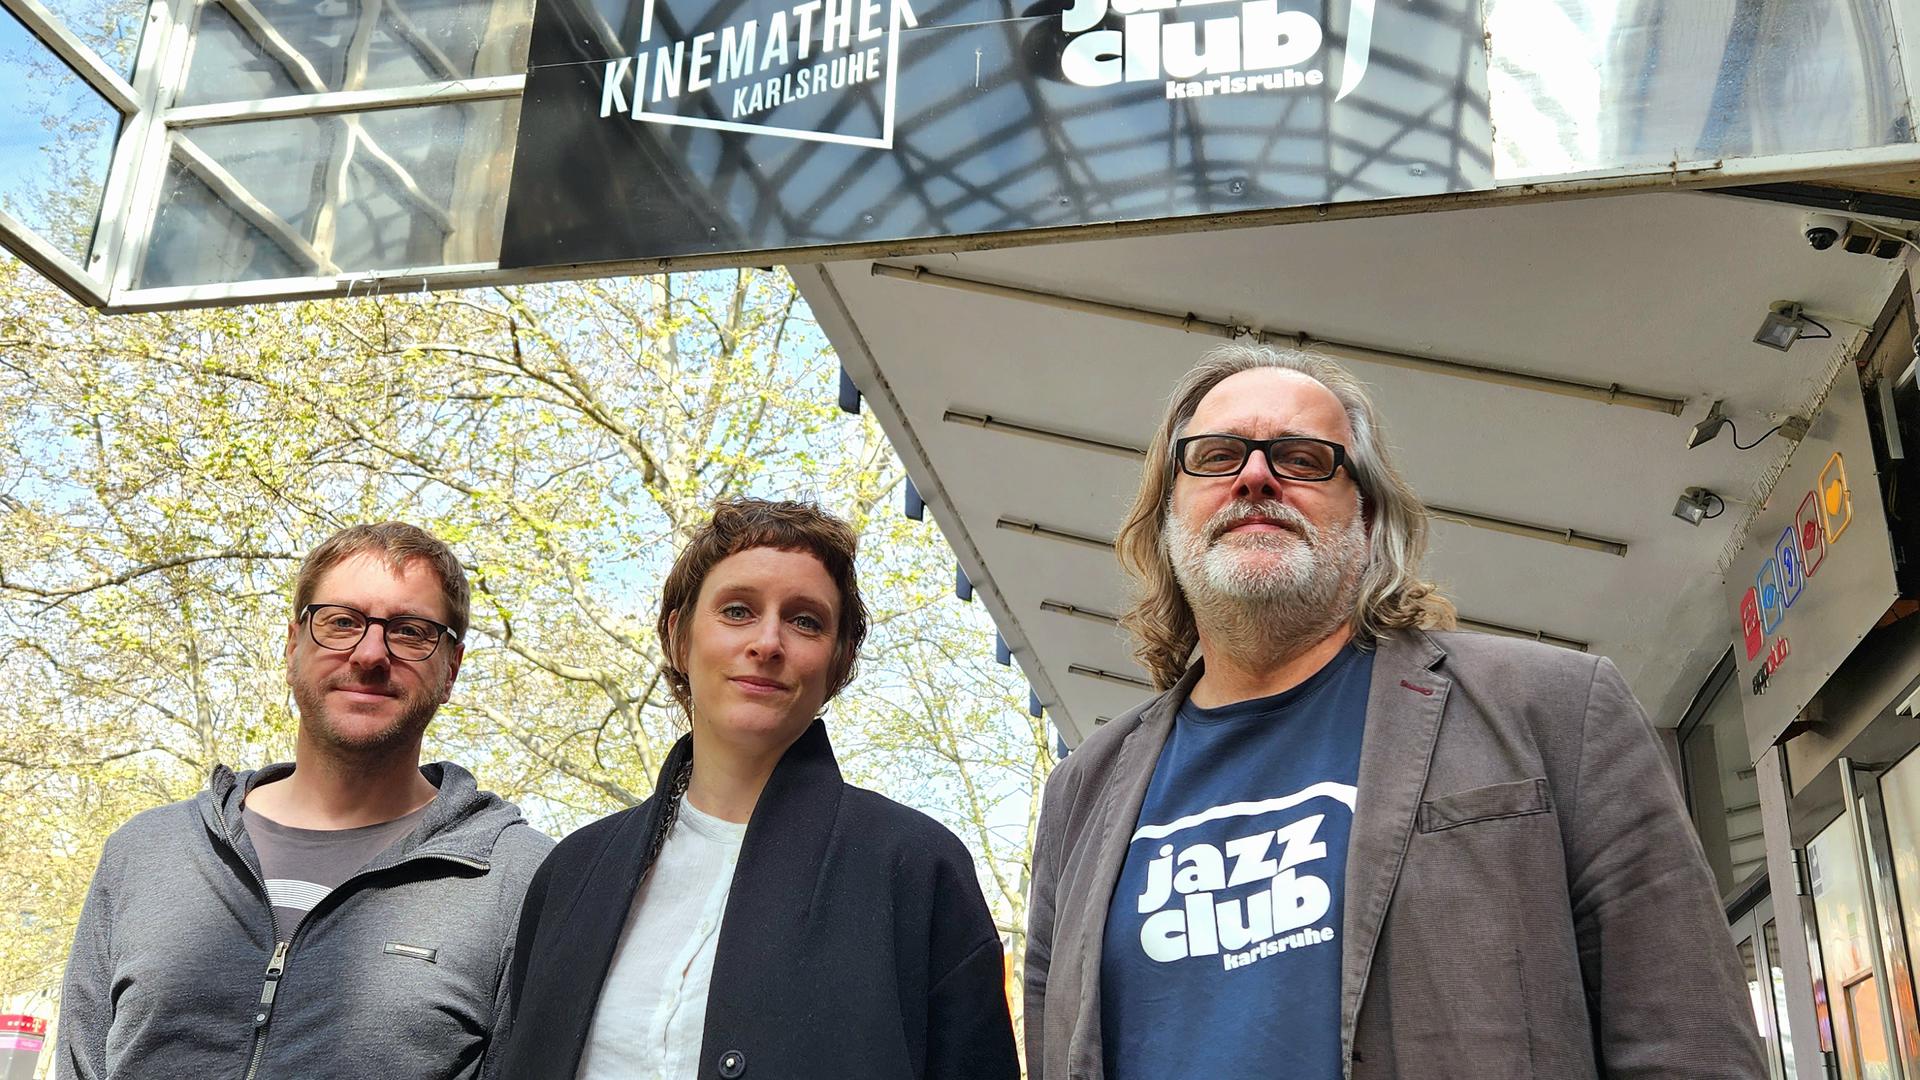 Niklas Braun, Julia Hildenbrand und Torsten Antoni vom Jazzclub Karlsruhe vor dem gemeinsamen Schild mit der Kinemathek in der Kaiserpassage. 